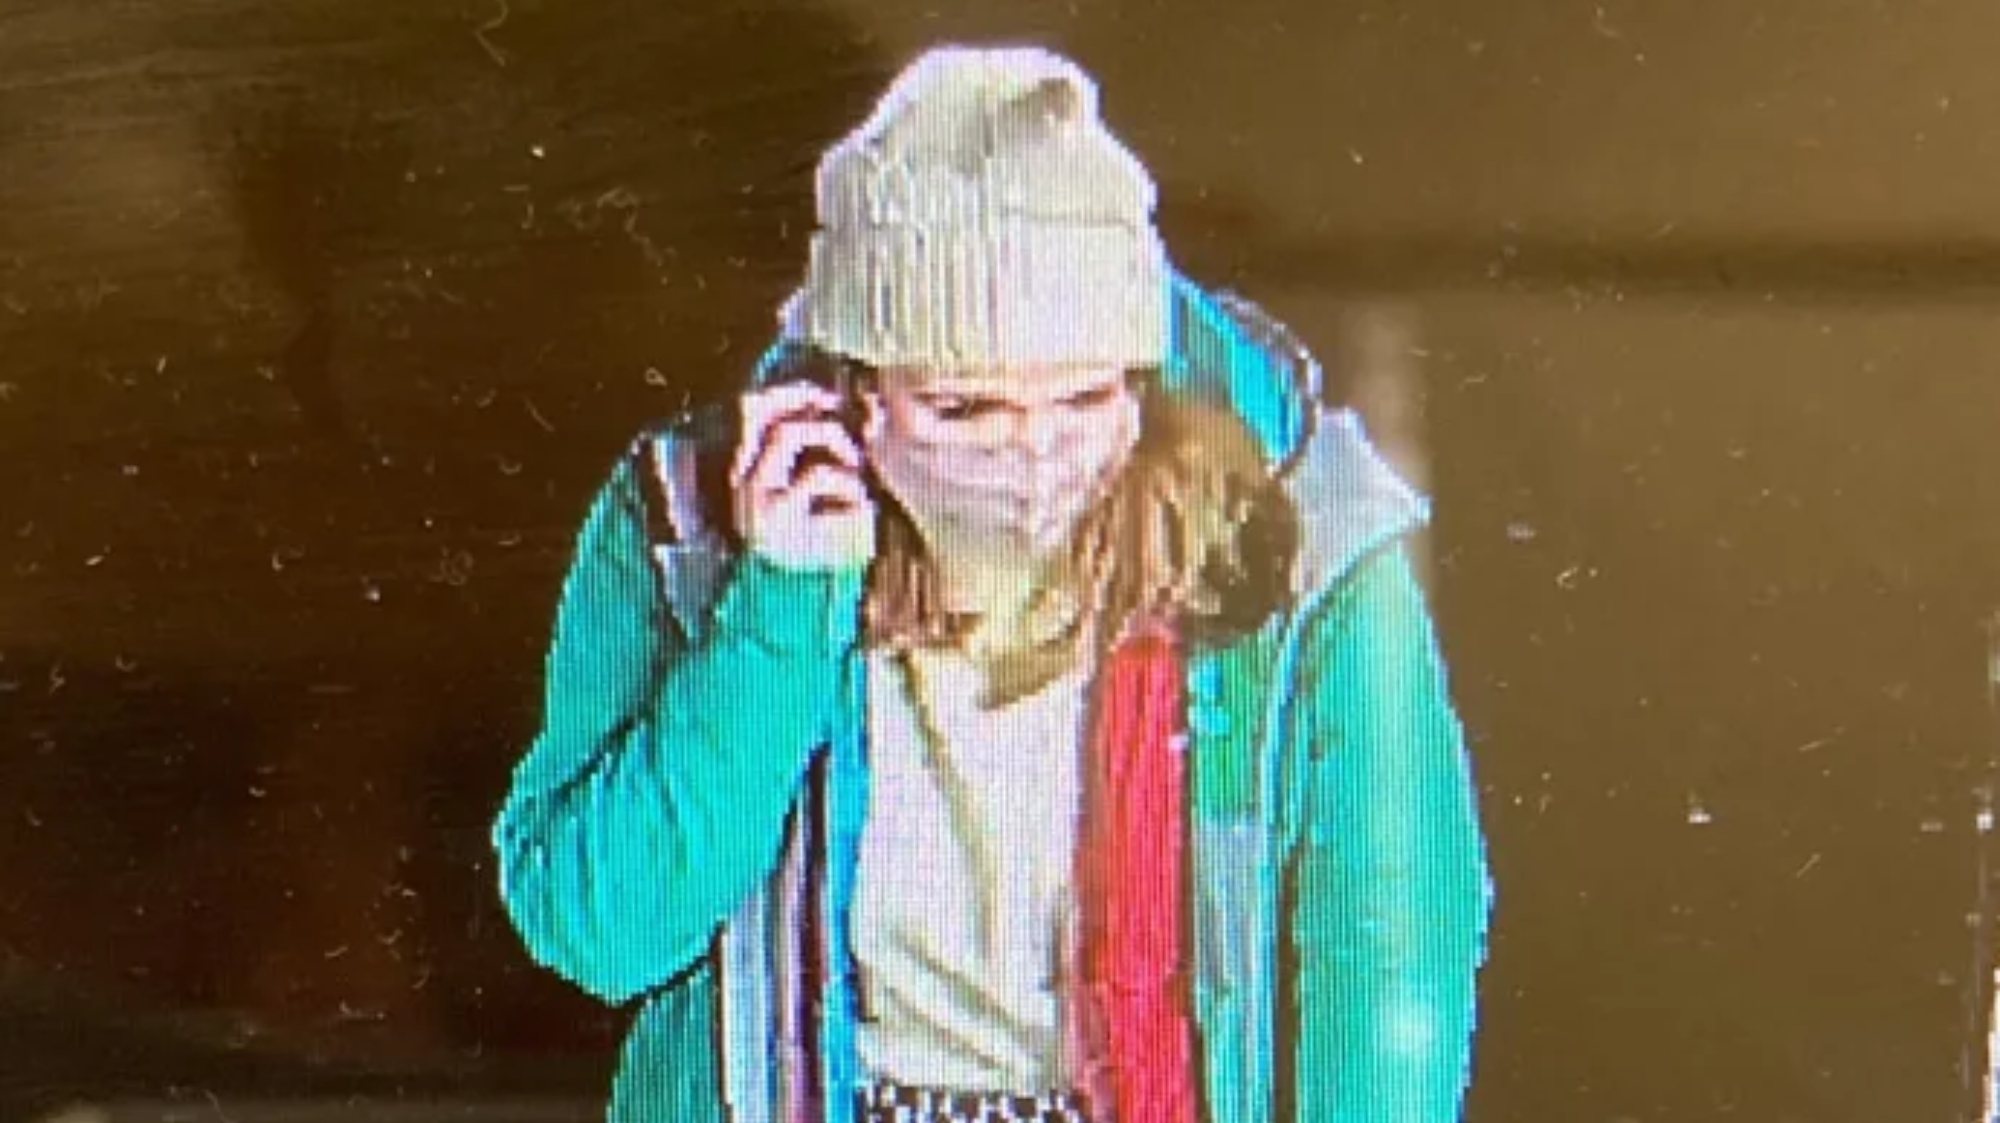 As imagens de videovigilância mostram Sarah Everard a caminho de casa, a falar ao telefone